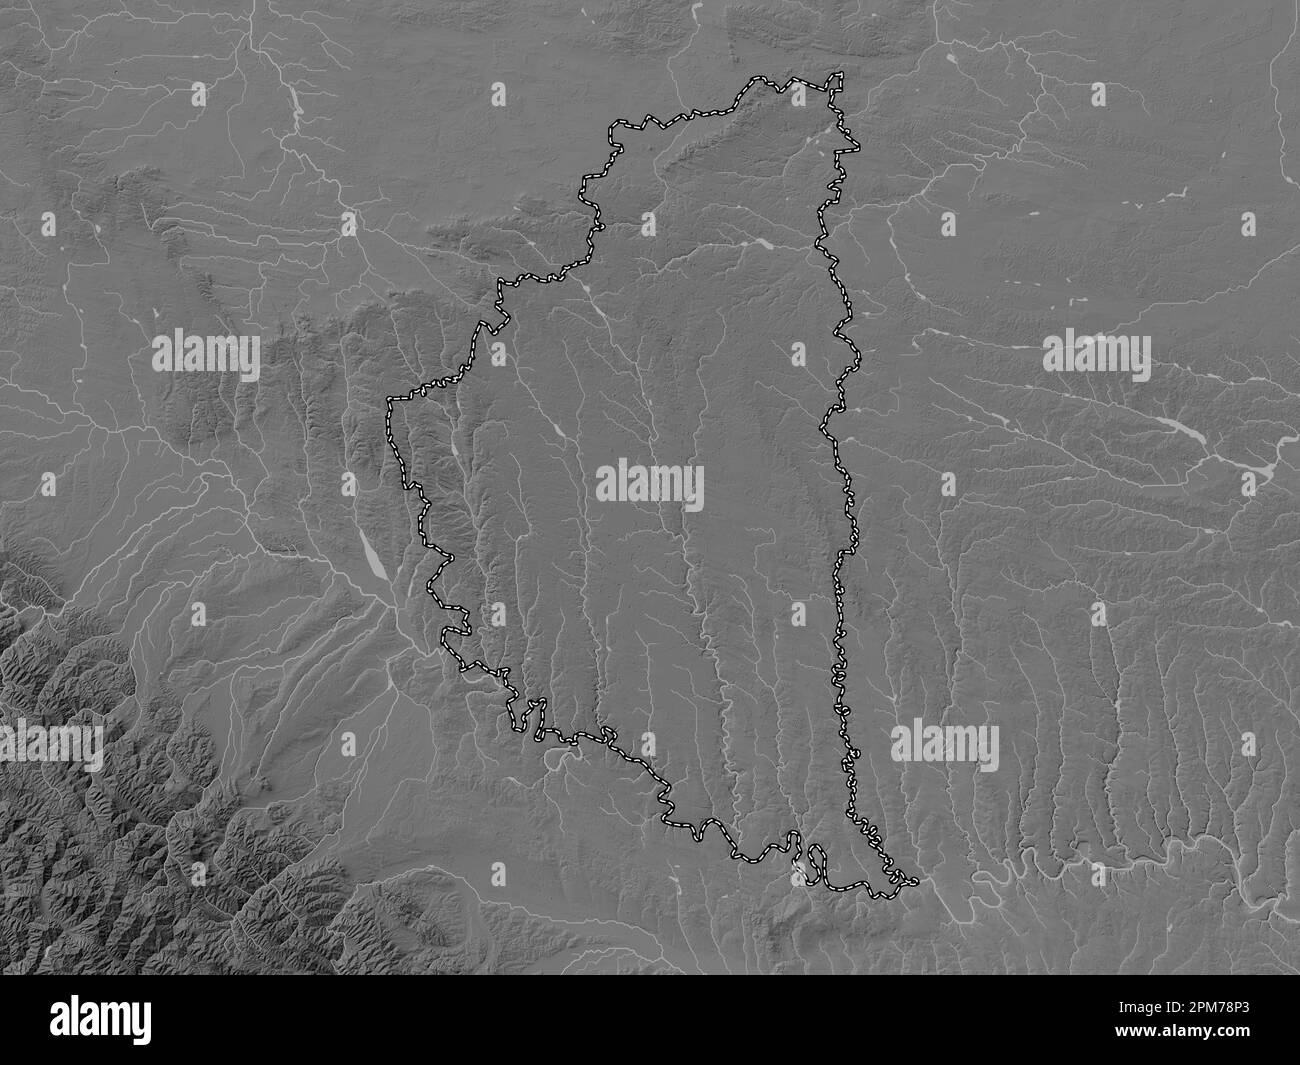 Ternopil', région de l'Ukraine. Carte d'altitude en niveaux de gris avec lacs et rivières Banque D'Images